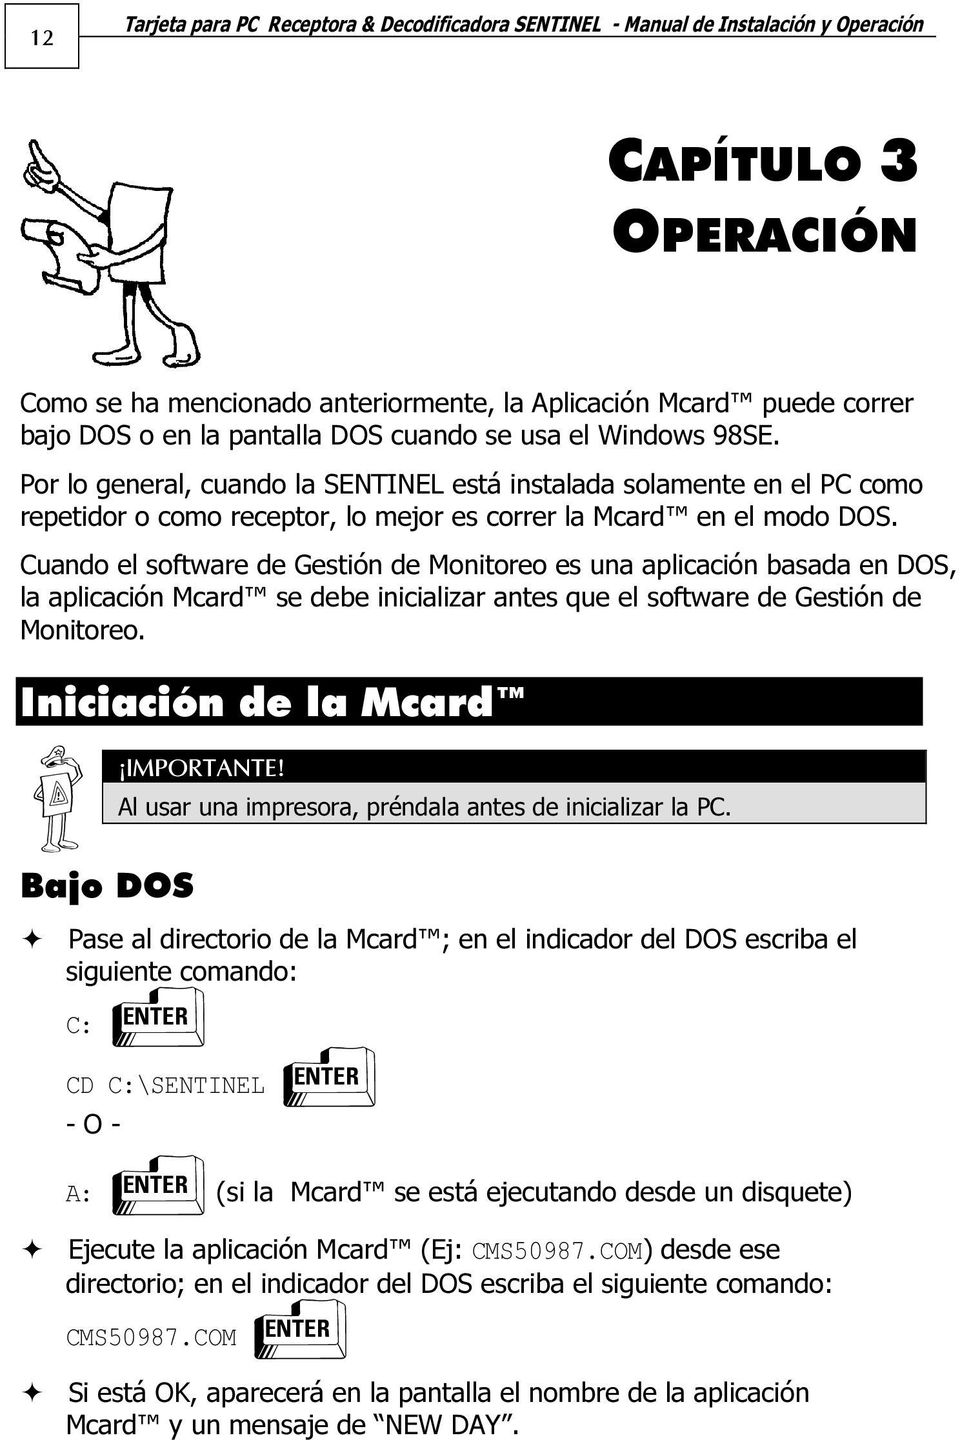 Cuando el software de Gestión de Monitoreo es una aplicación basada en DOS, la aplicación Mcard se debe inicializar antes que el software de Gestión de Monitoreo.